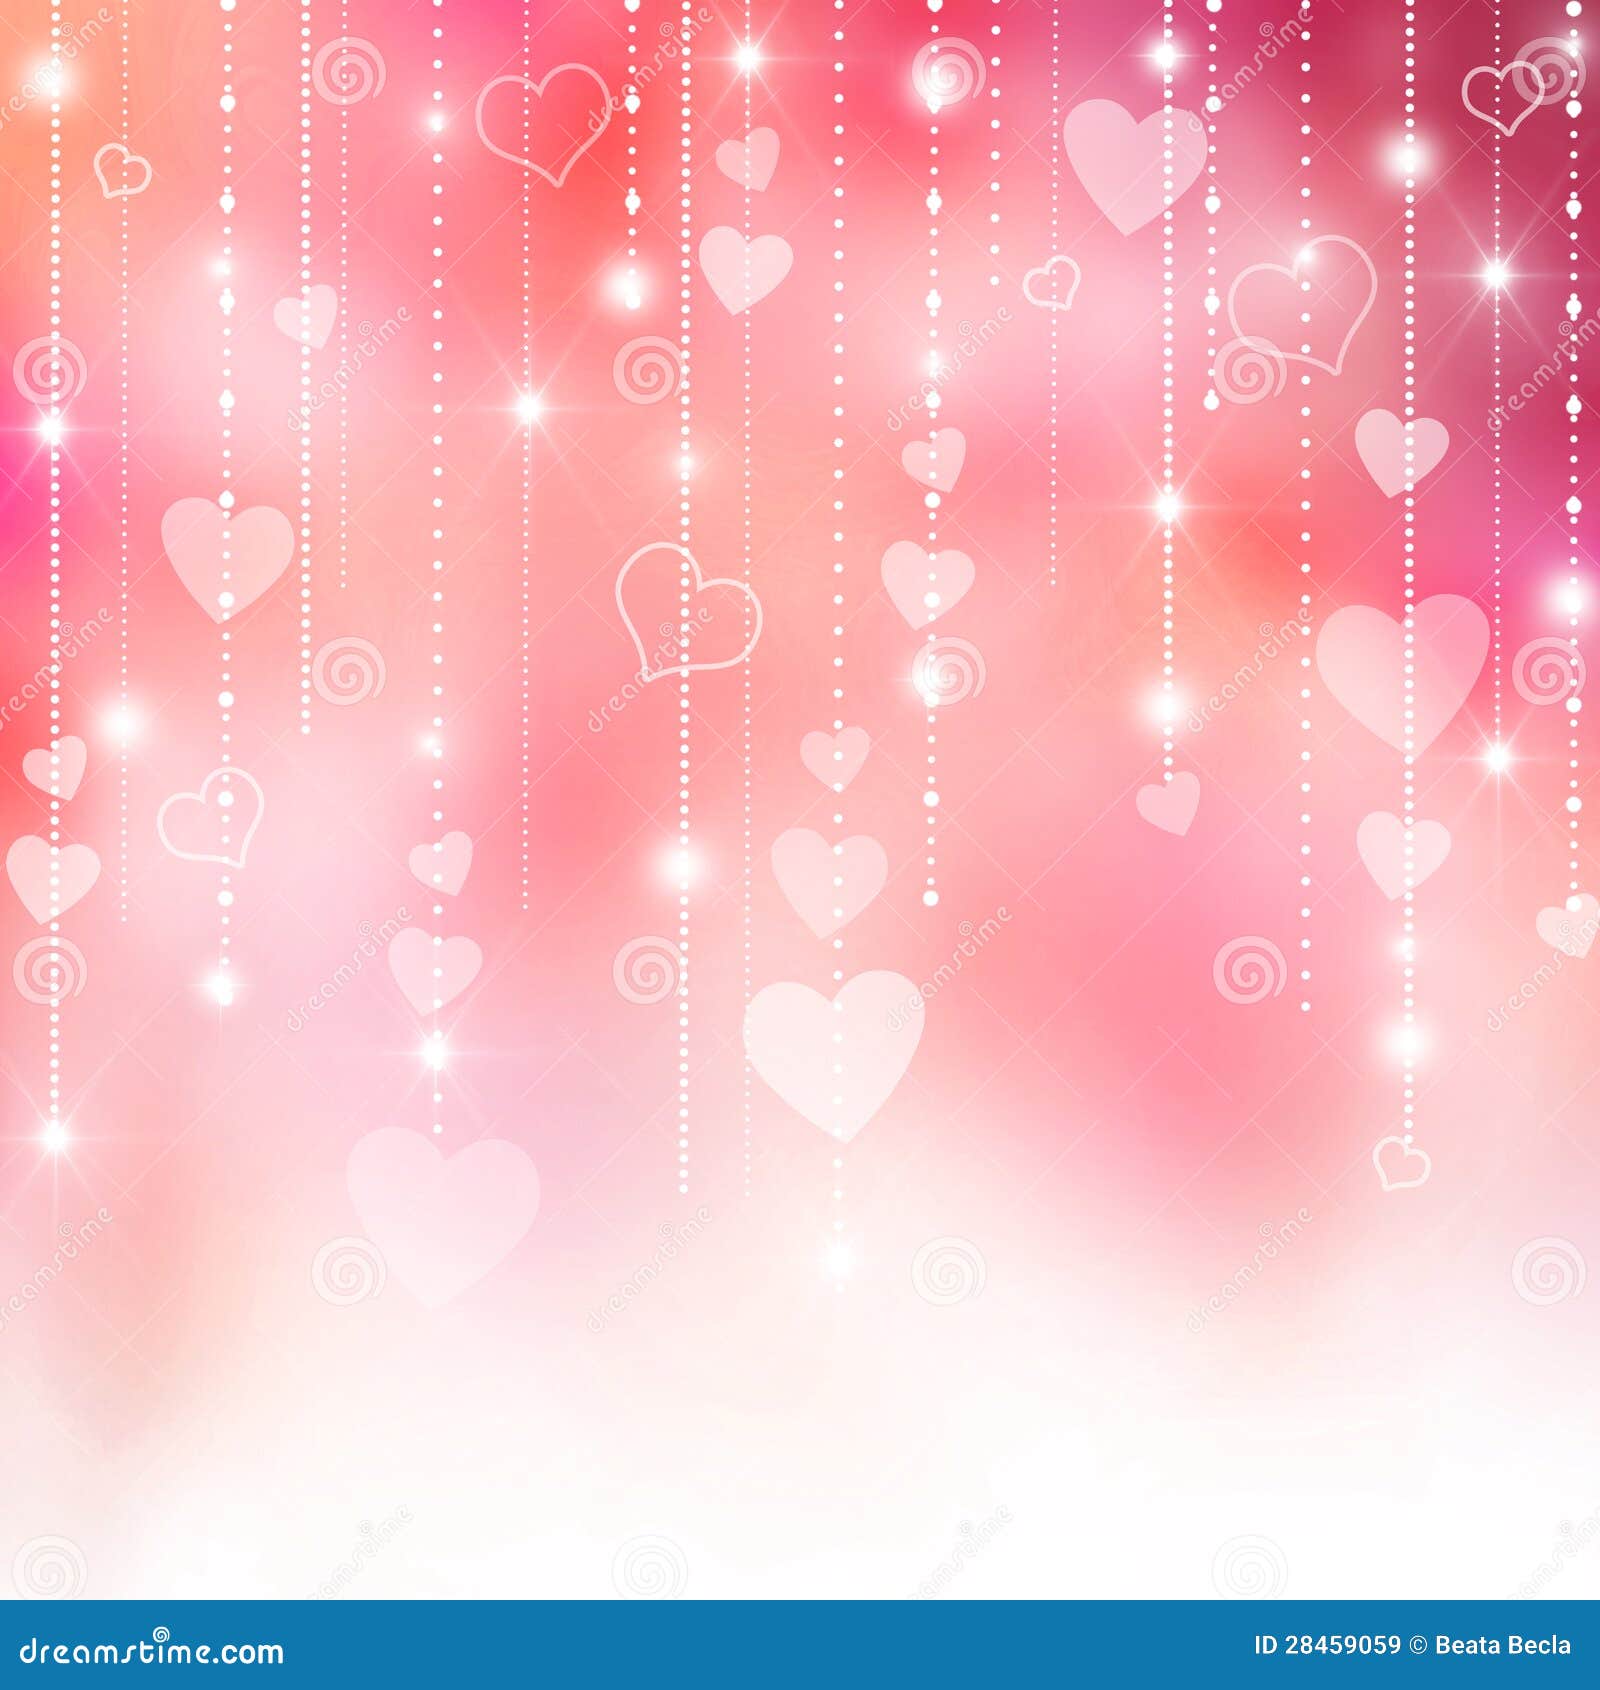 pink valentine's hearts background